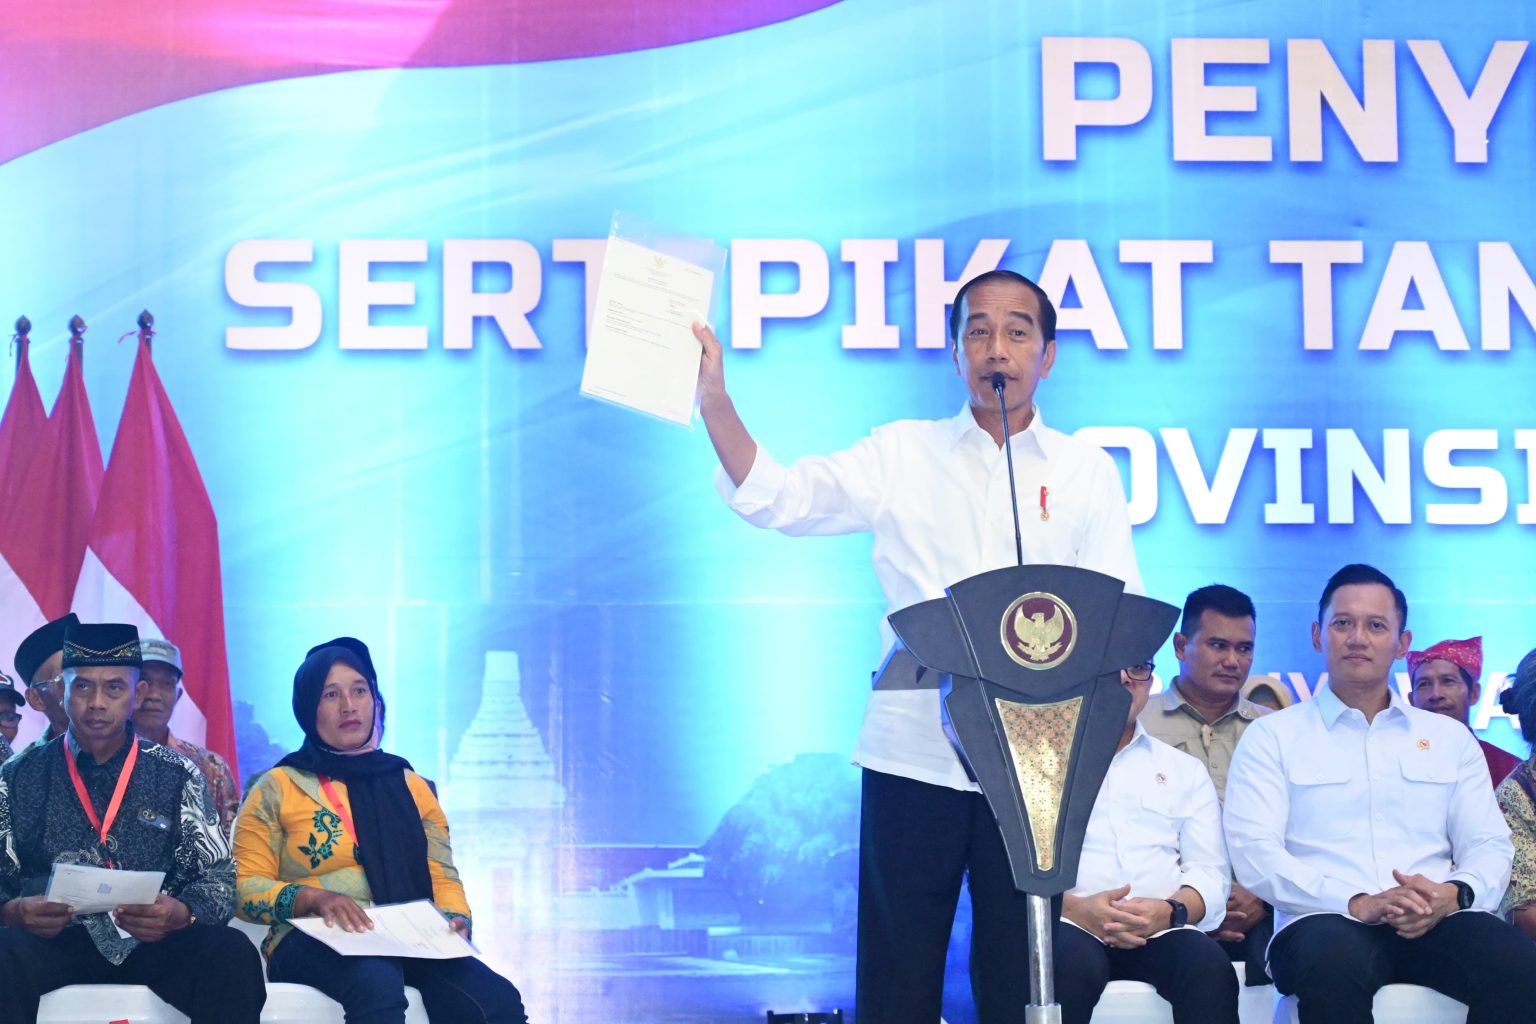 Presiden Jokowi Serahkan Ribuan Sertifikat Tanah Elektronik Hasil Redistribusi Tanah di Banyuwangi